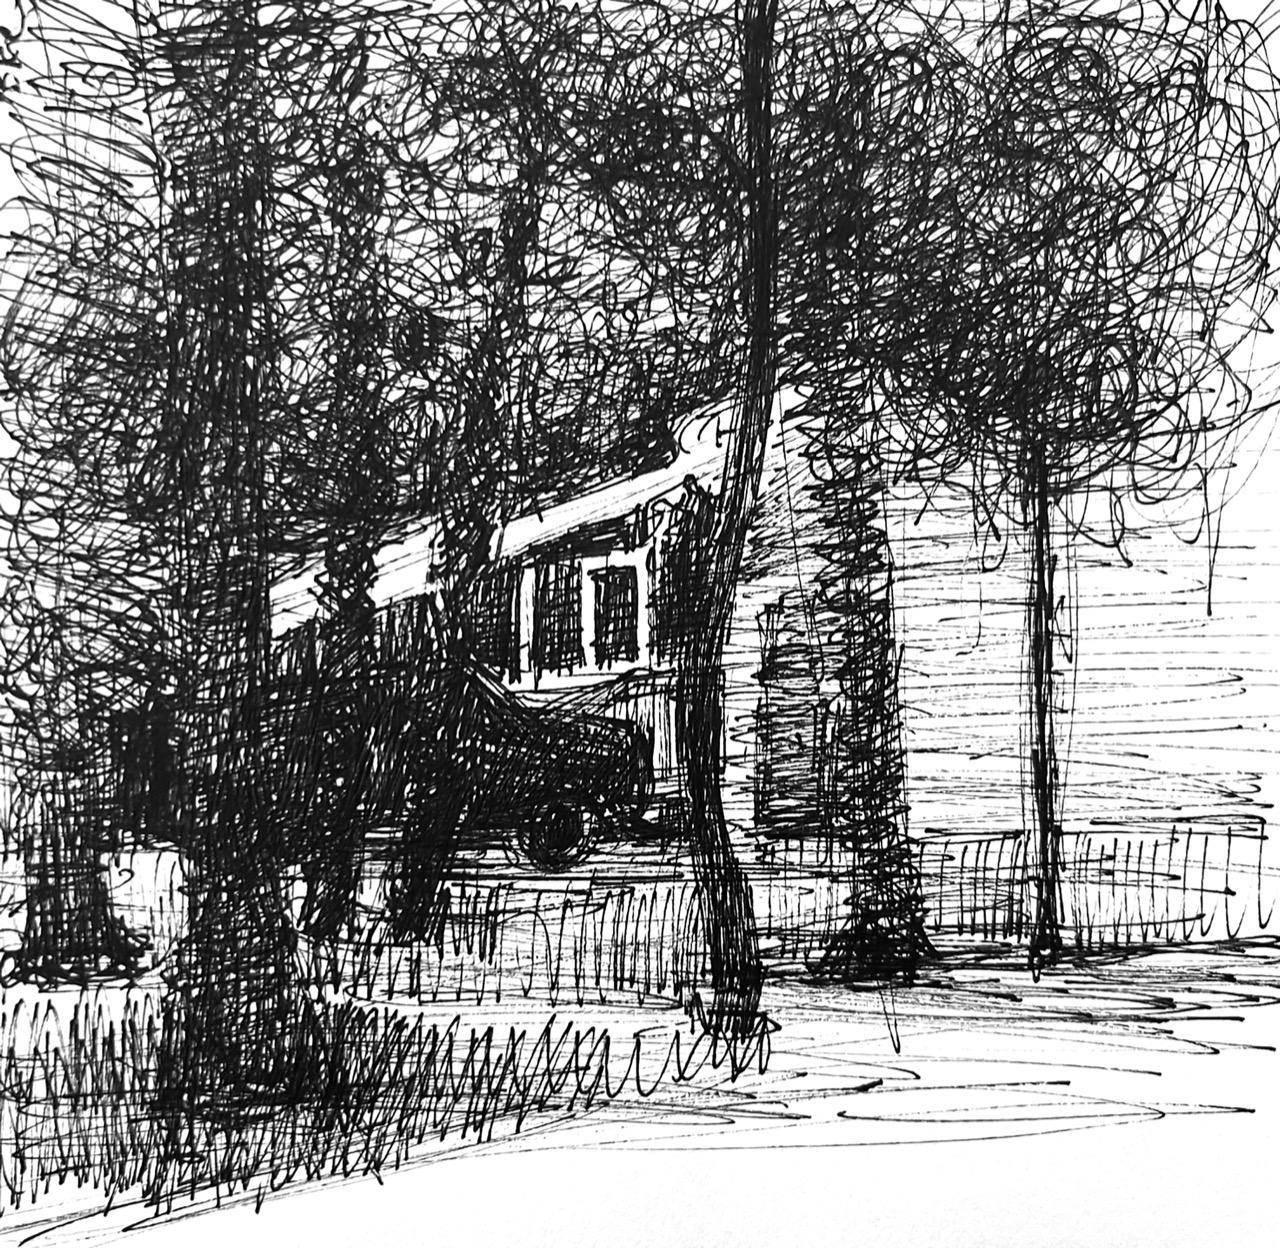 Charlotte Seifert Landscape Print – Haus am See  Radierung 7"x "on River BFK Papier 1 von 5 gerahmten 10"x16" Brazos River